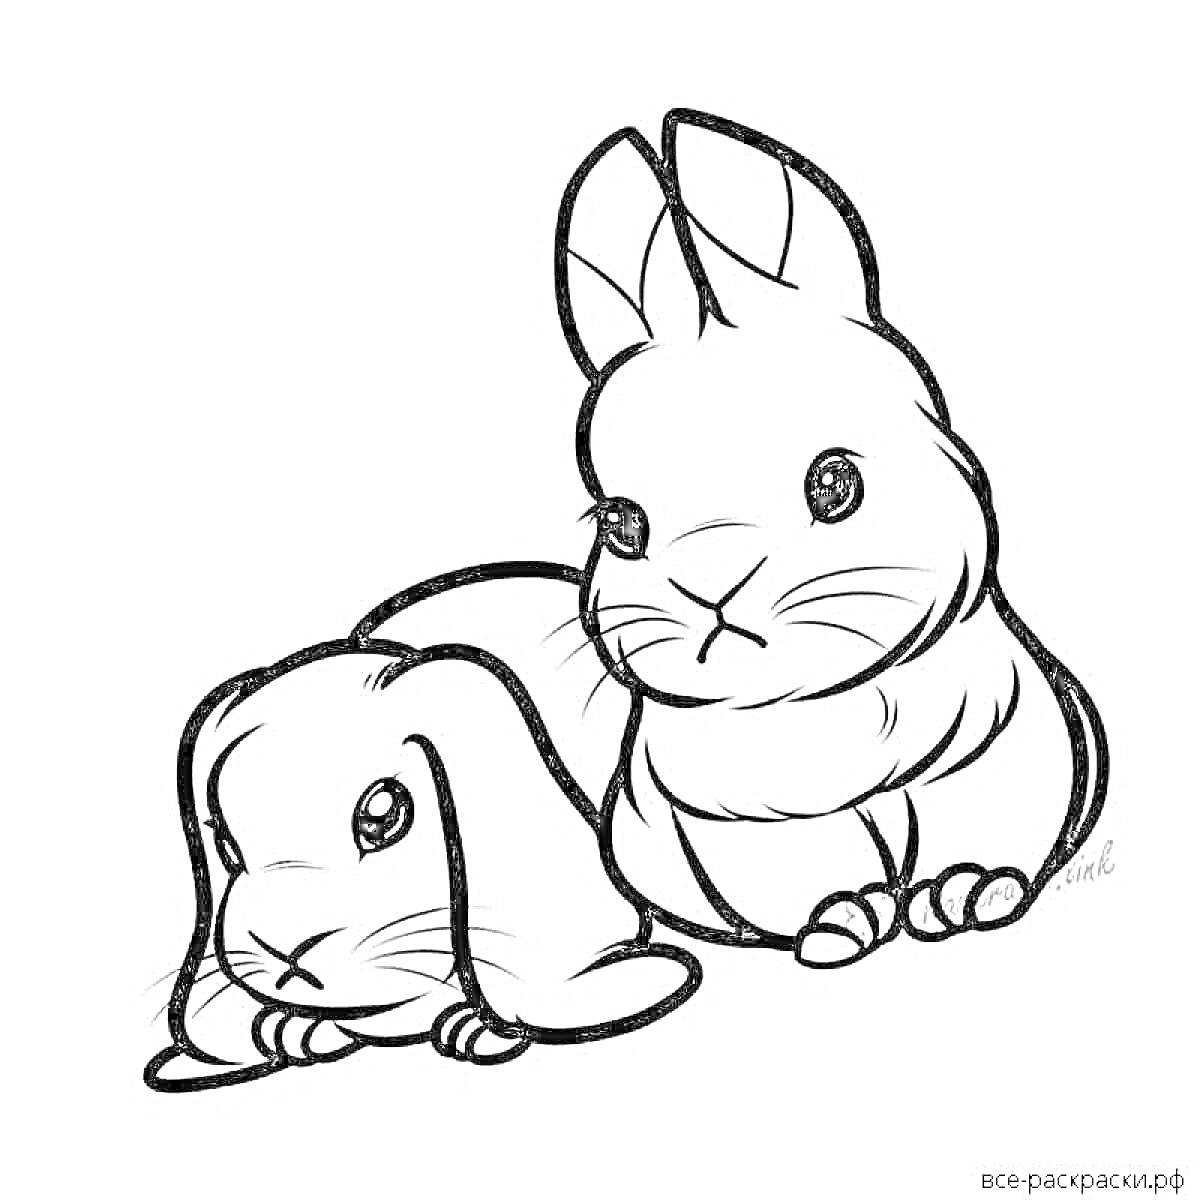 Раскраска Два милых кролика - один сидит, другой лежит рядом